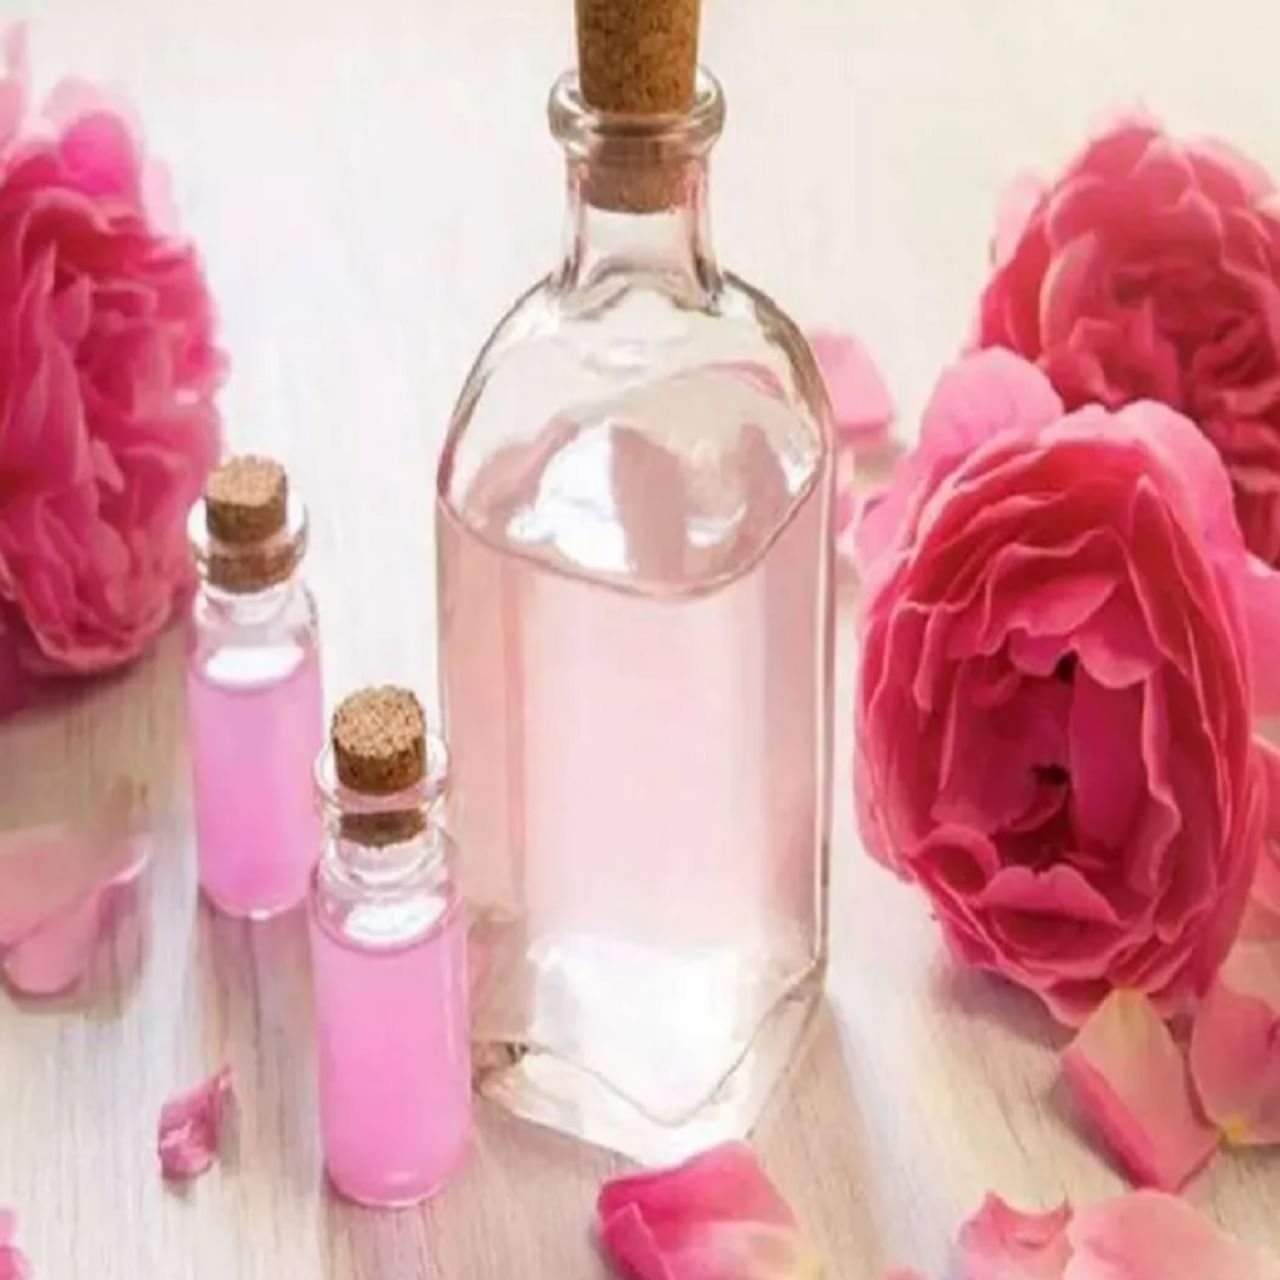 गुलाबाच्या पाकळ्यांपासून तयार केलेले गुलाब पाणी त्वचेसाठी अत्यंत फायदेशीर असते. गुलाब पाण्यामुळे आपली त्वचा हायड्रेट राहते. बाजारात तुम्हाला गुलाब पाणी सहज मिळेल आणि तुम्ही घरी देखील तयार करू शकता. सकाळी उठल्यानंतर आणि रात्री झोपण्यापूर्वी हे त्वचेवर लावा आणि सुंदर त्वचा मिळवा. 